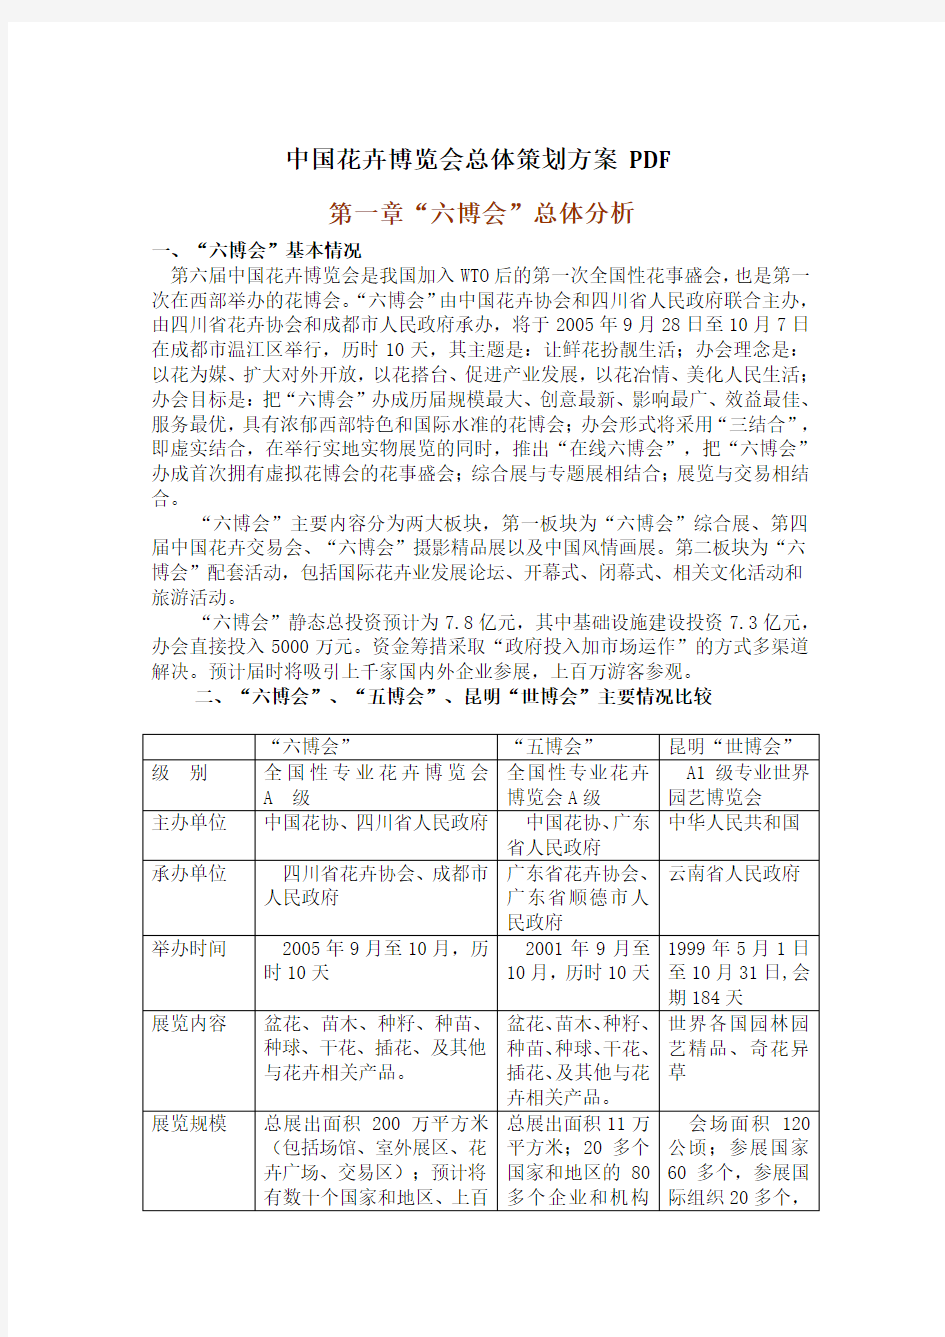 中国花卉博览会总体项目策划方案 PDF